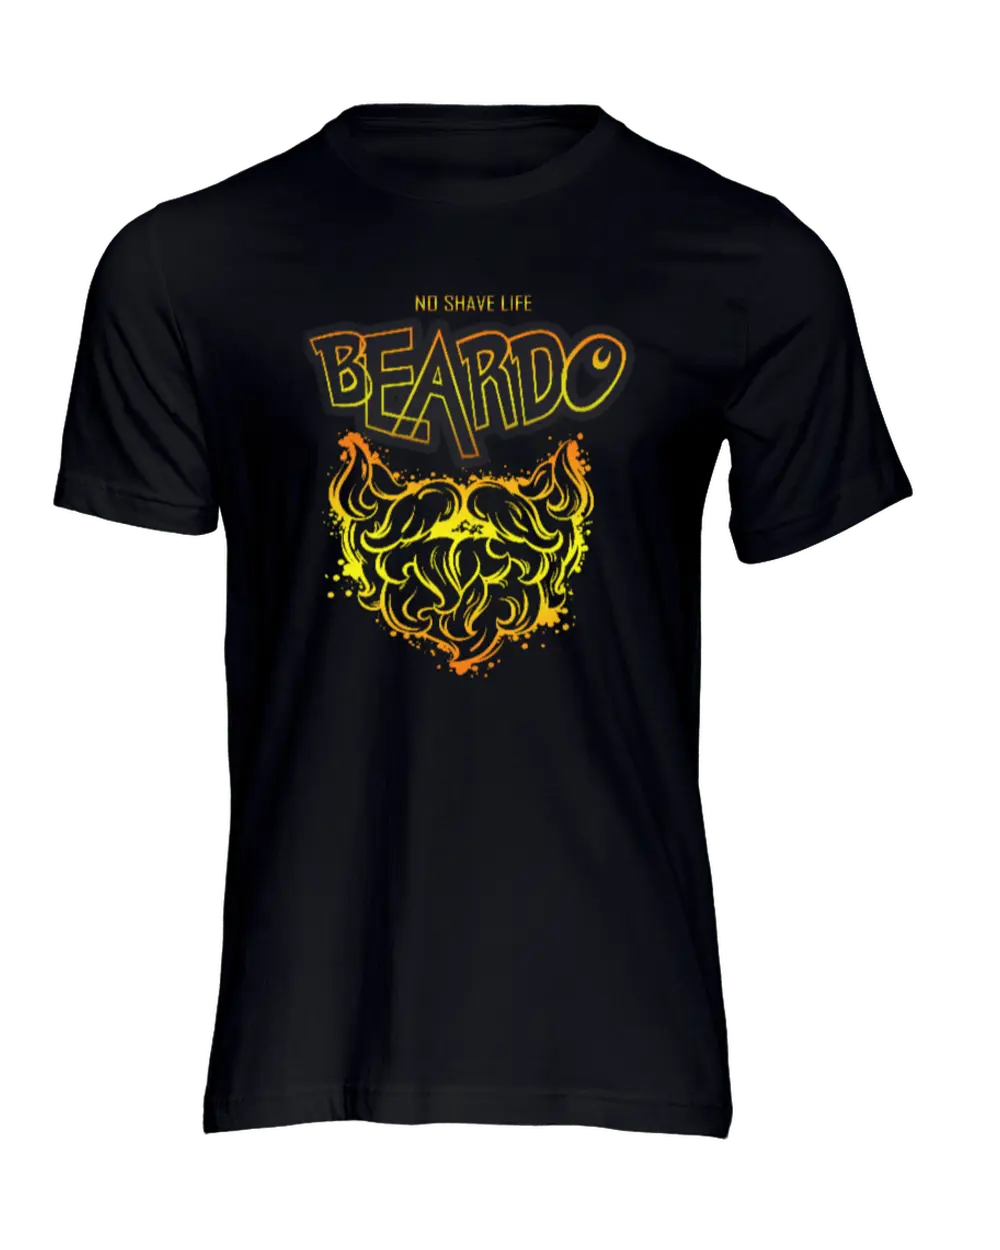 Beardo Black Men's T-Shirt|T-Shirt